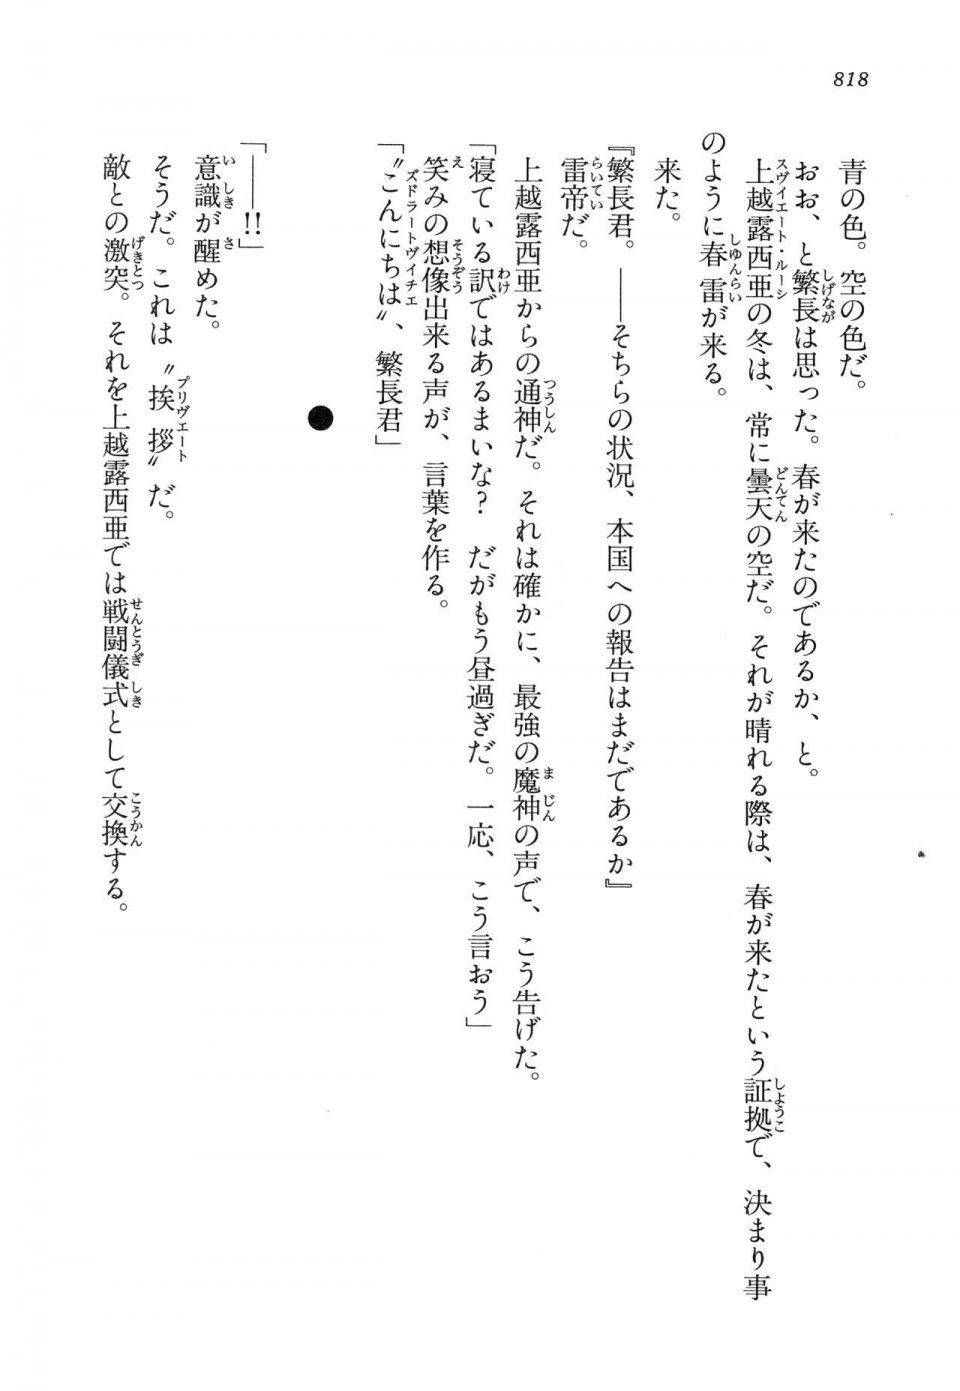 Kyoukai Senjou no Horizon LN Vol 14(6B) - Photo #818